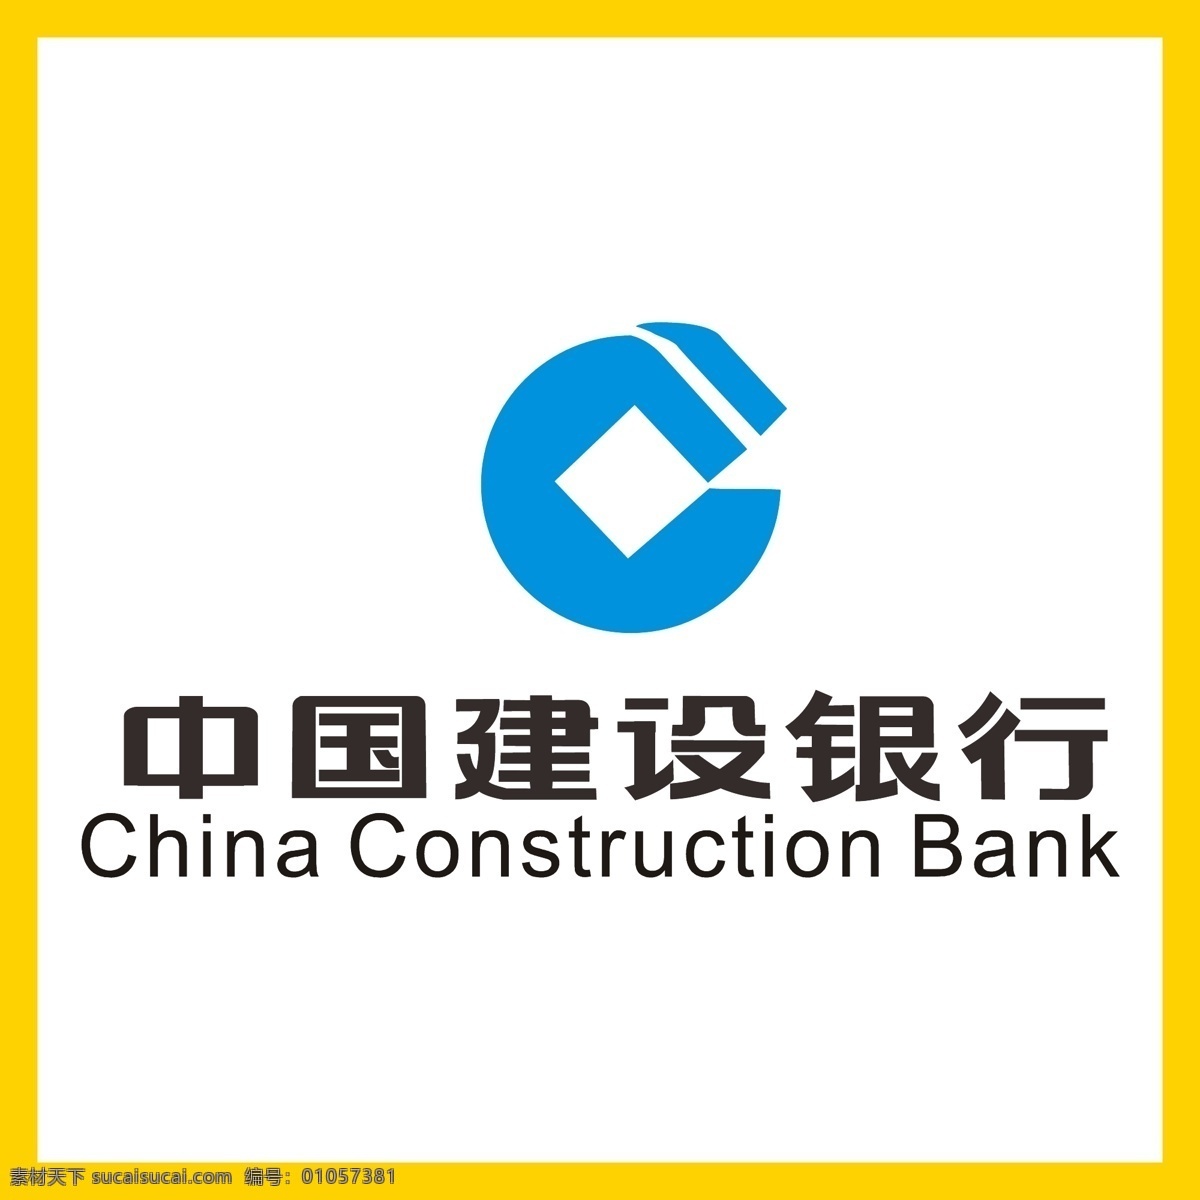 中国建设银行 建设银行 银行 信用卡 金融 投资理财 理财产品 贷款 国企 事业单位 logo 标志 矢量 vi logo设计